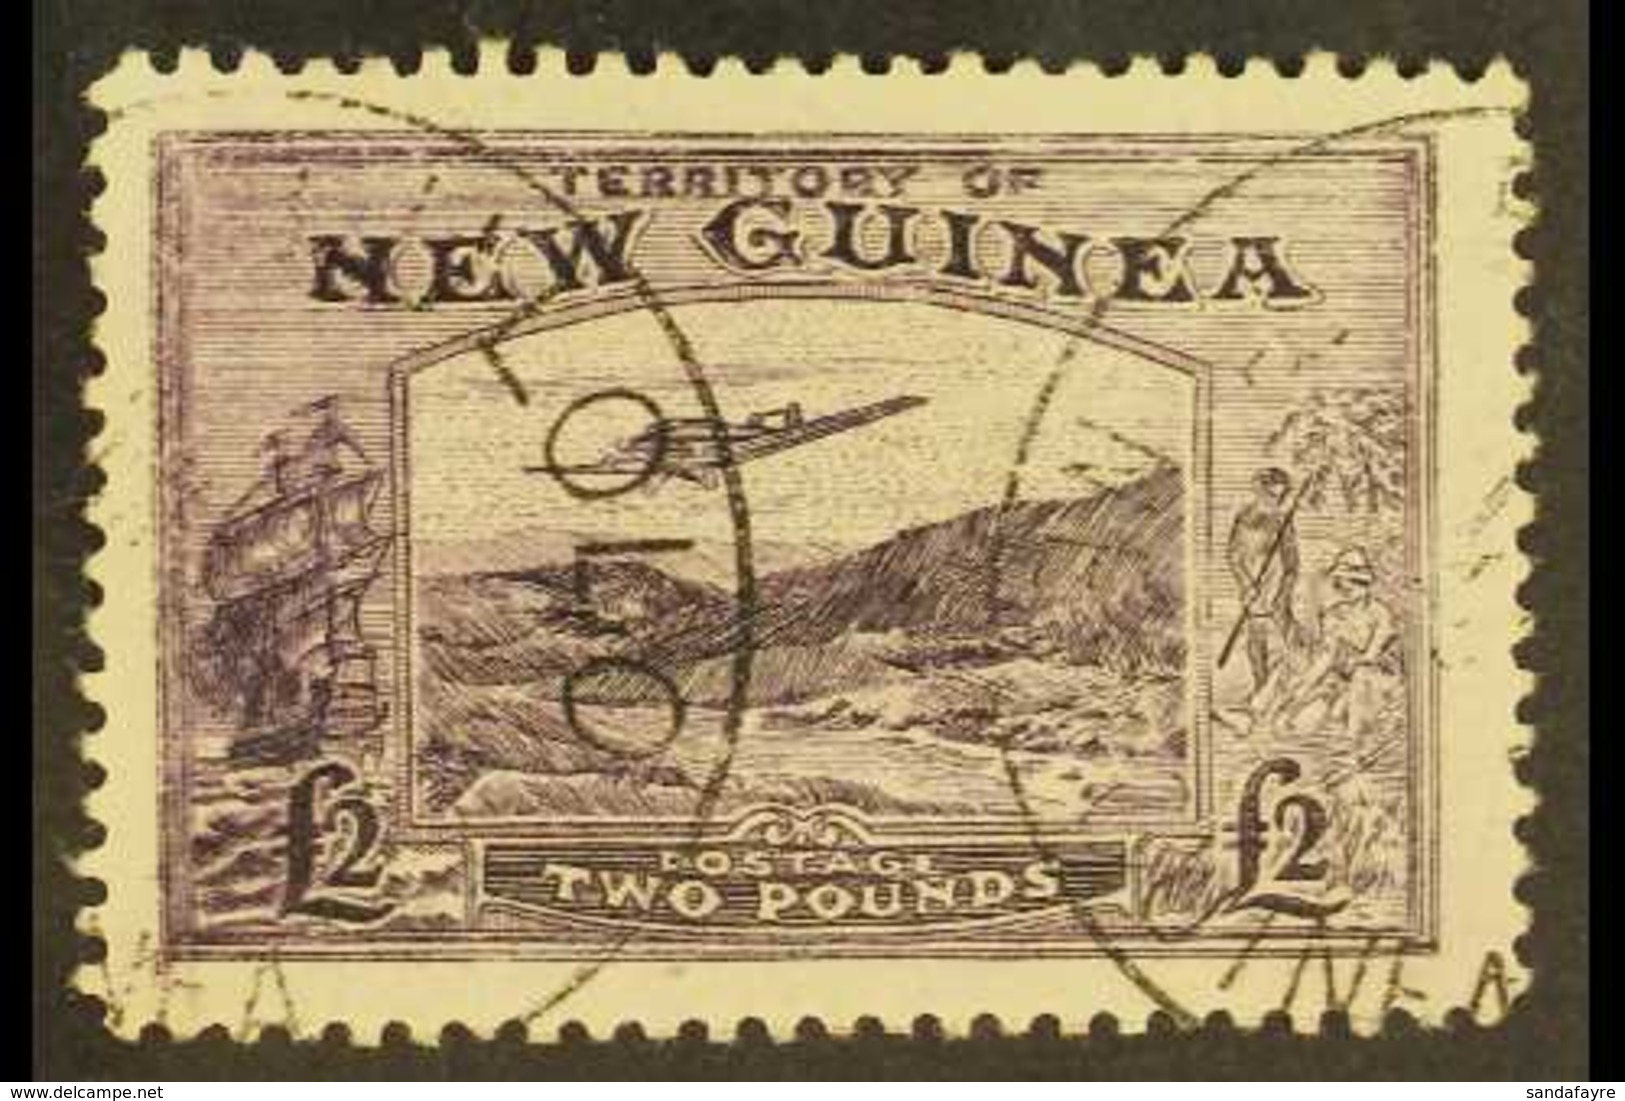 NEW GUINEA - Papua New Guinea